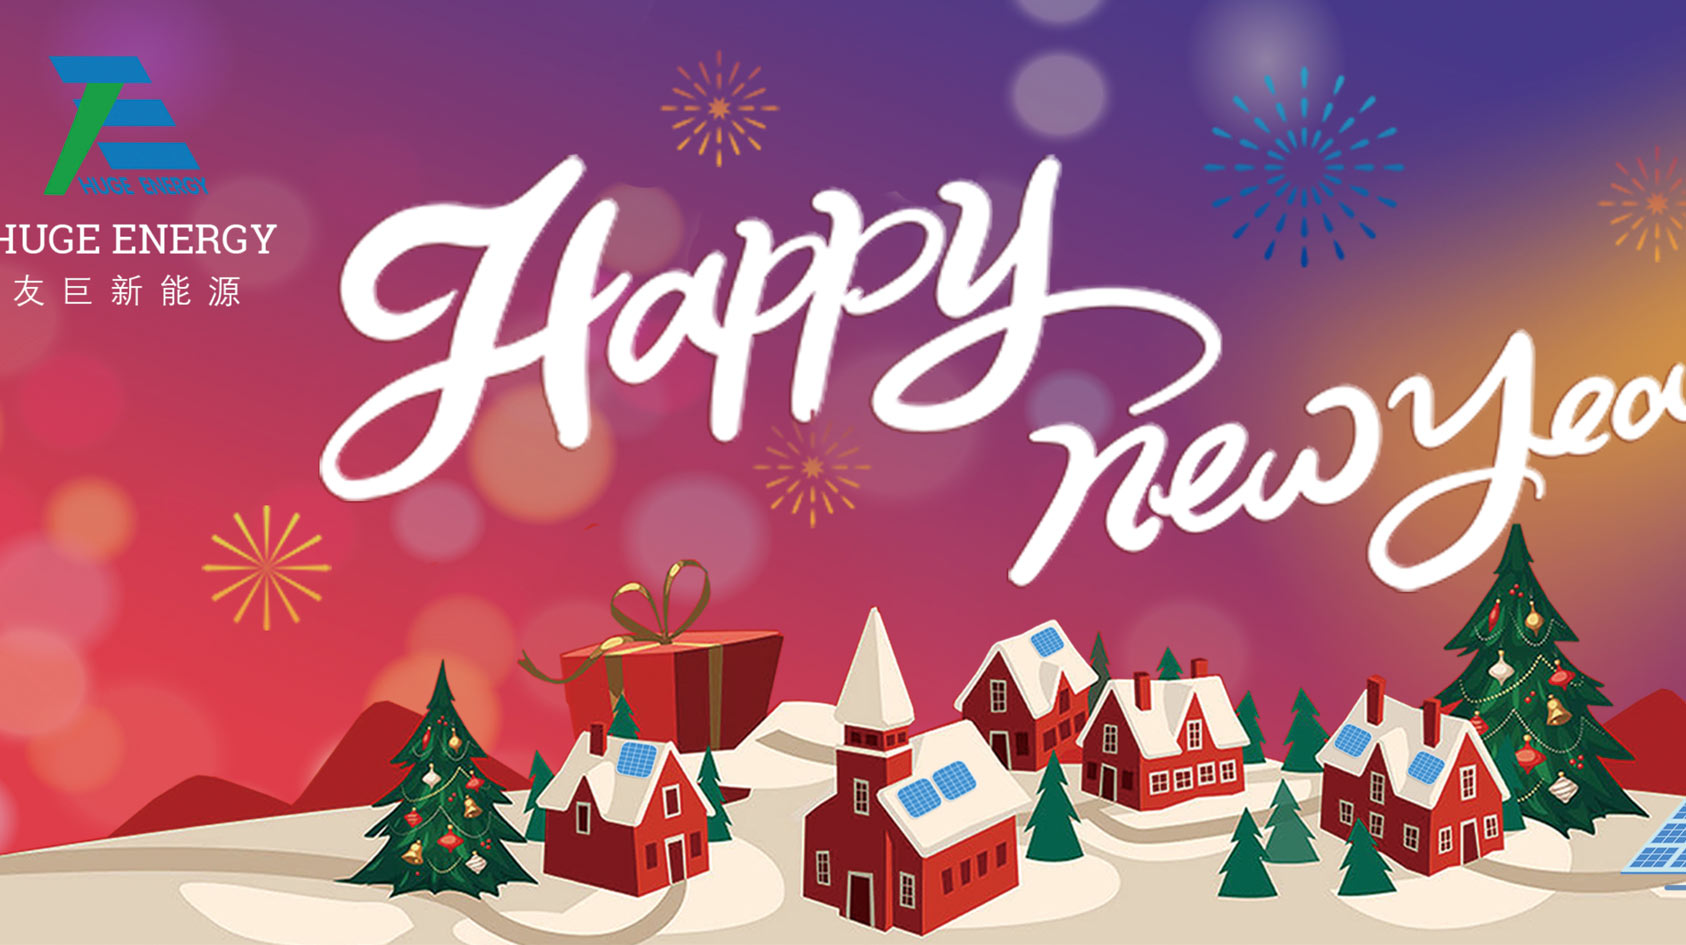 Pada awal tahun baru, Huge Energy mengucapkan selamat tahun baru kepada anda!